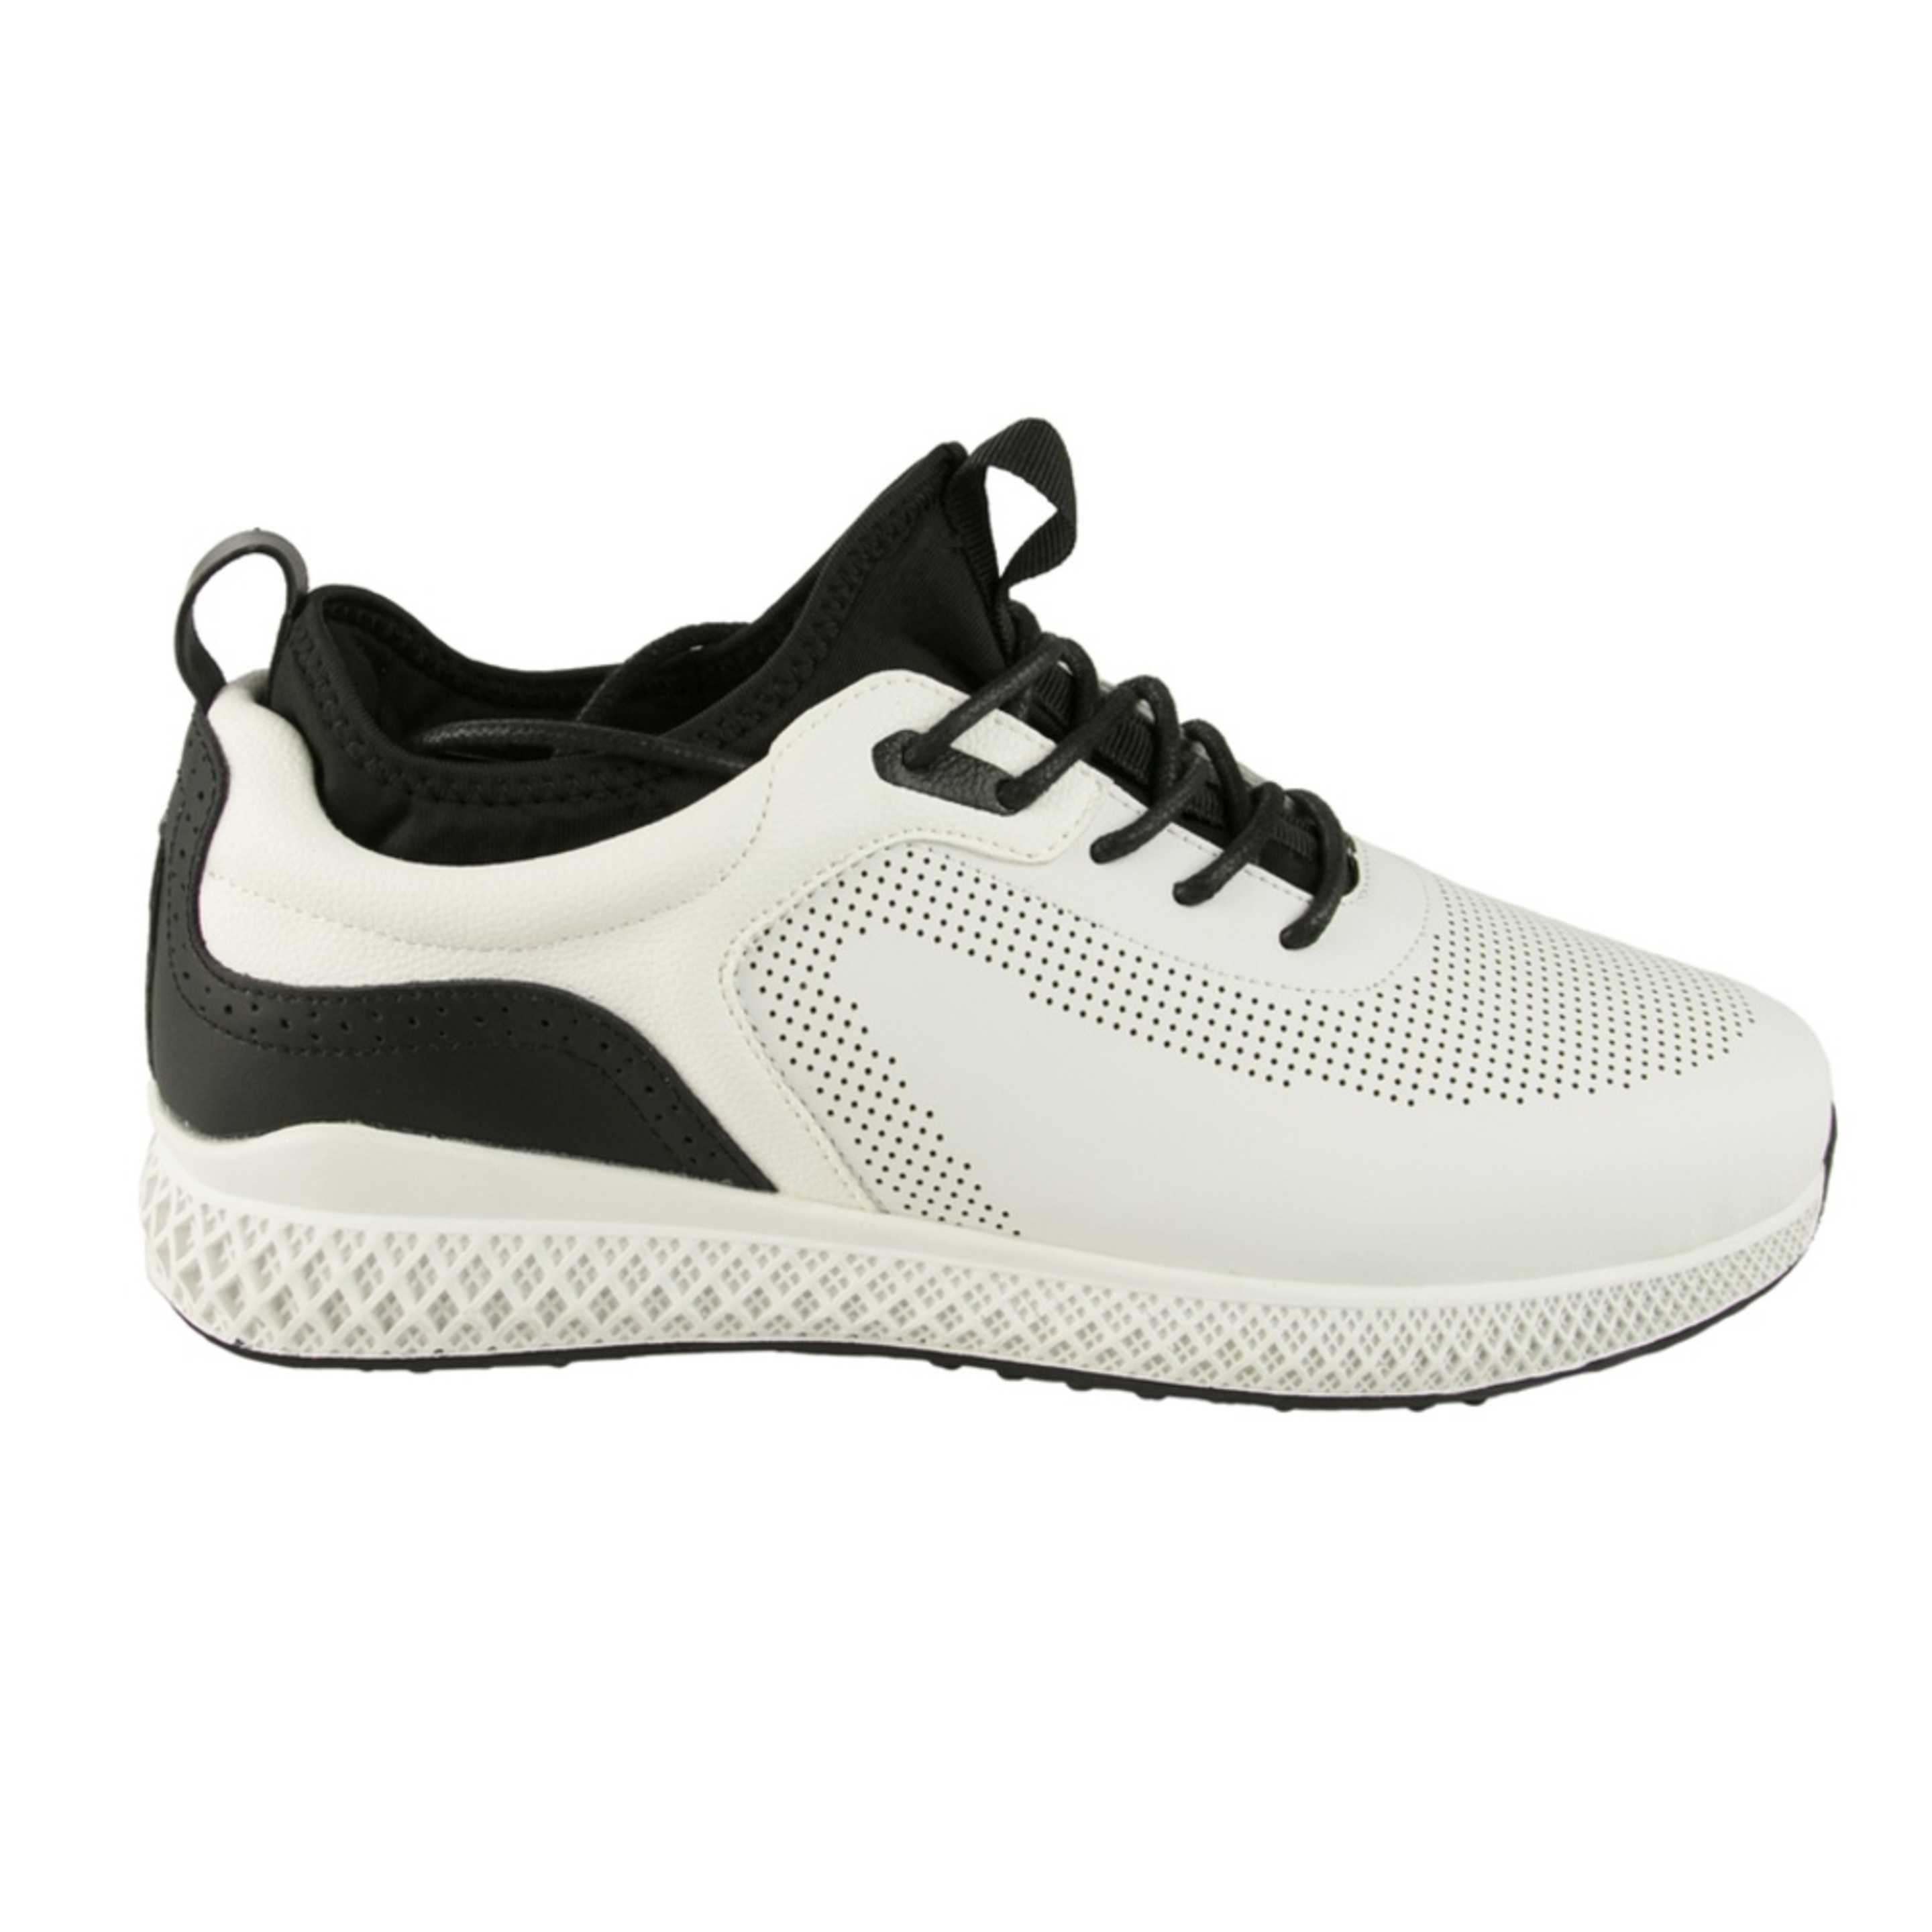 Zapatos De Golf Zerimar Con Troquelados - Negro/Blanco - Zapatos Golf Hombre Zapatillas Piel  MKP